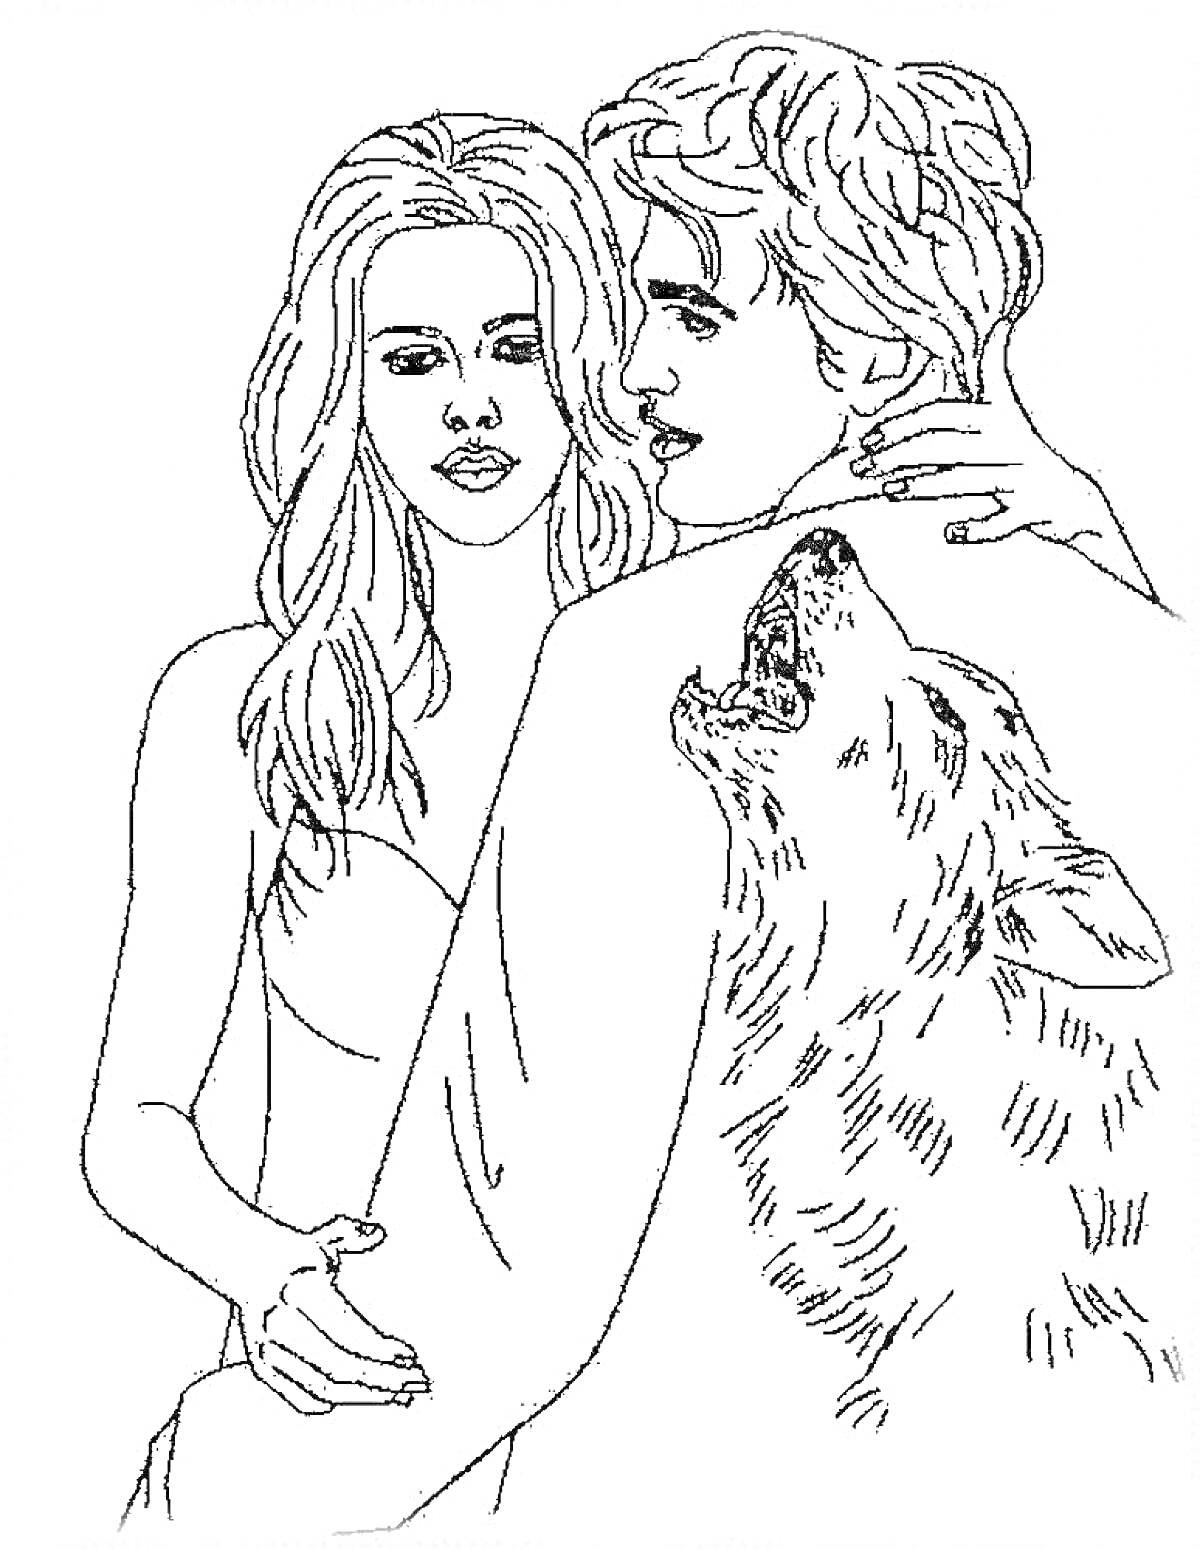 Раскраска Двое людей обнимаются, мужчина с рисунком волка на спине